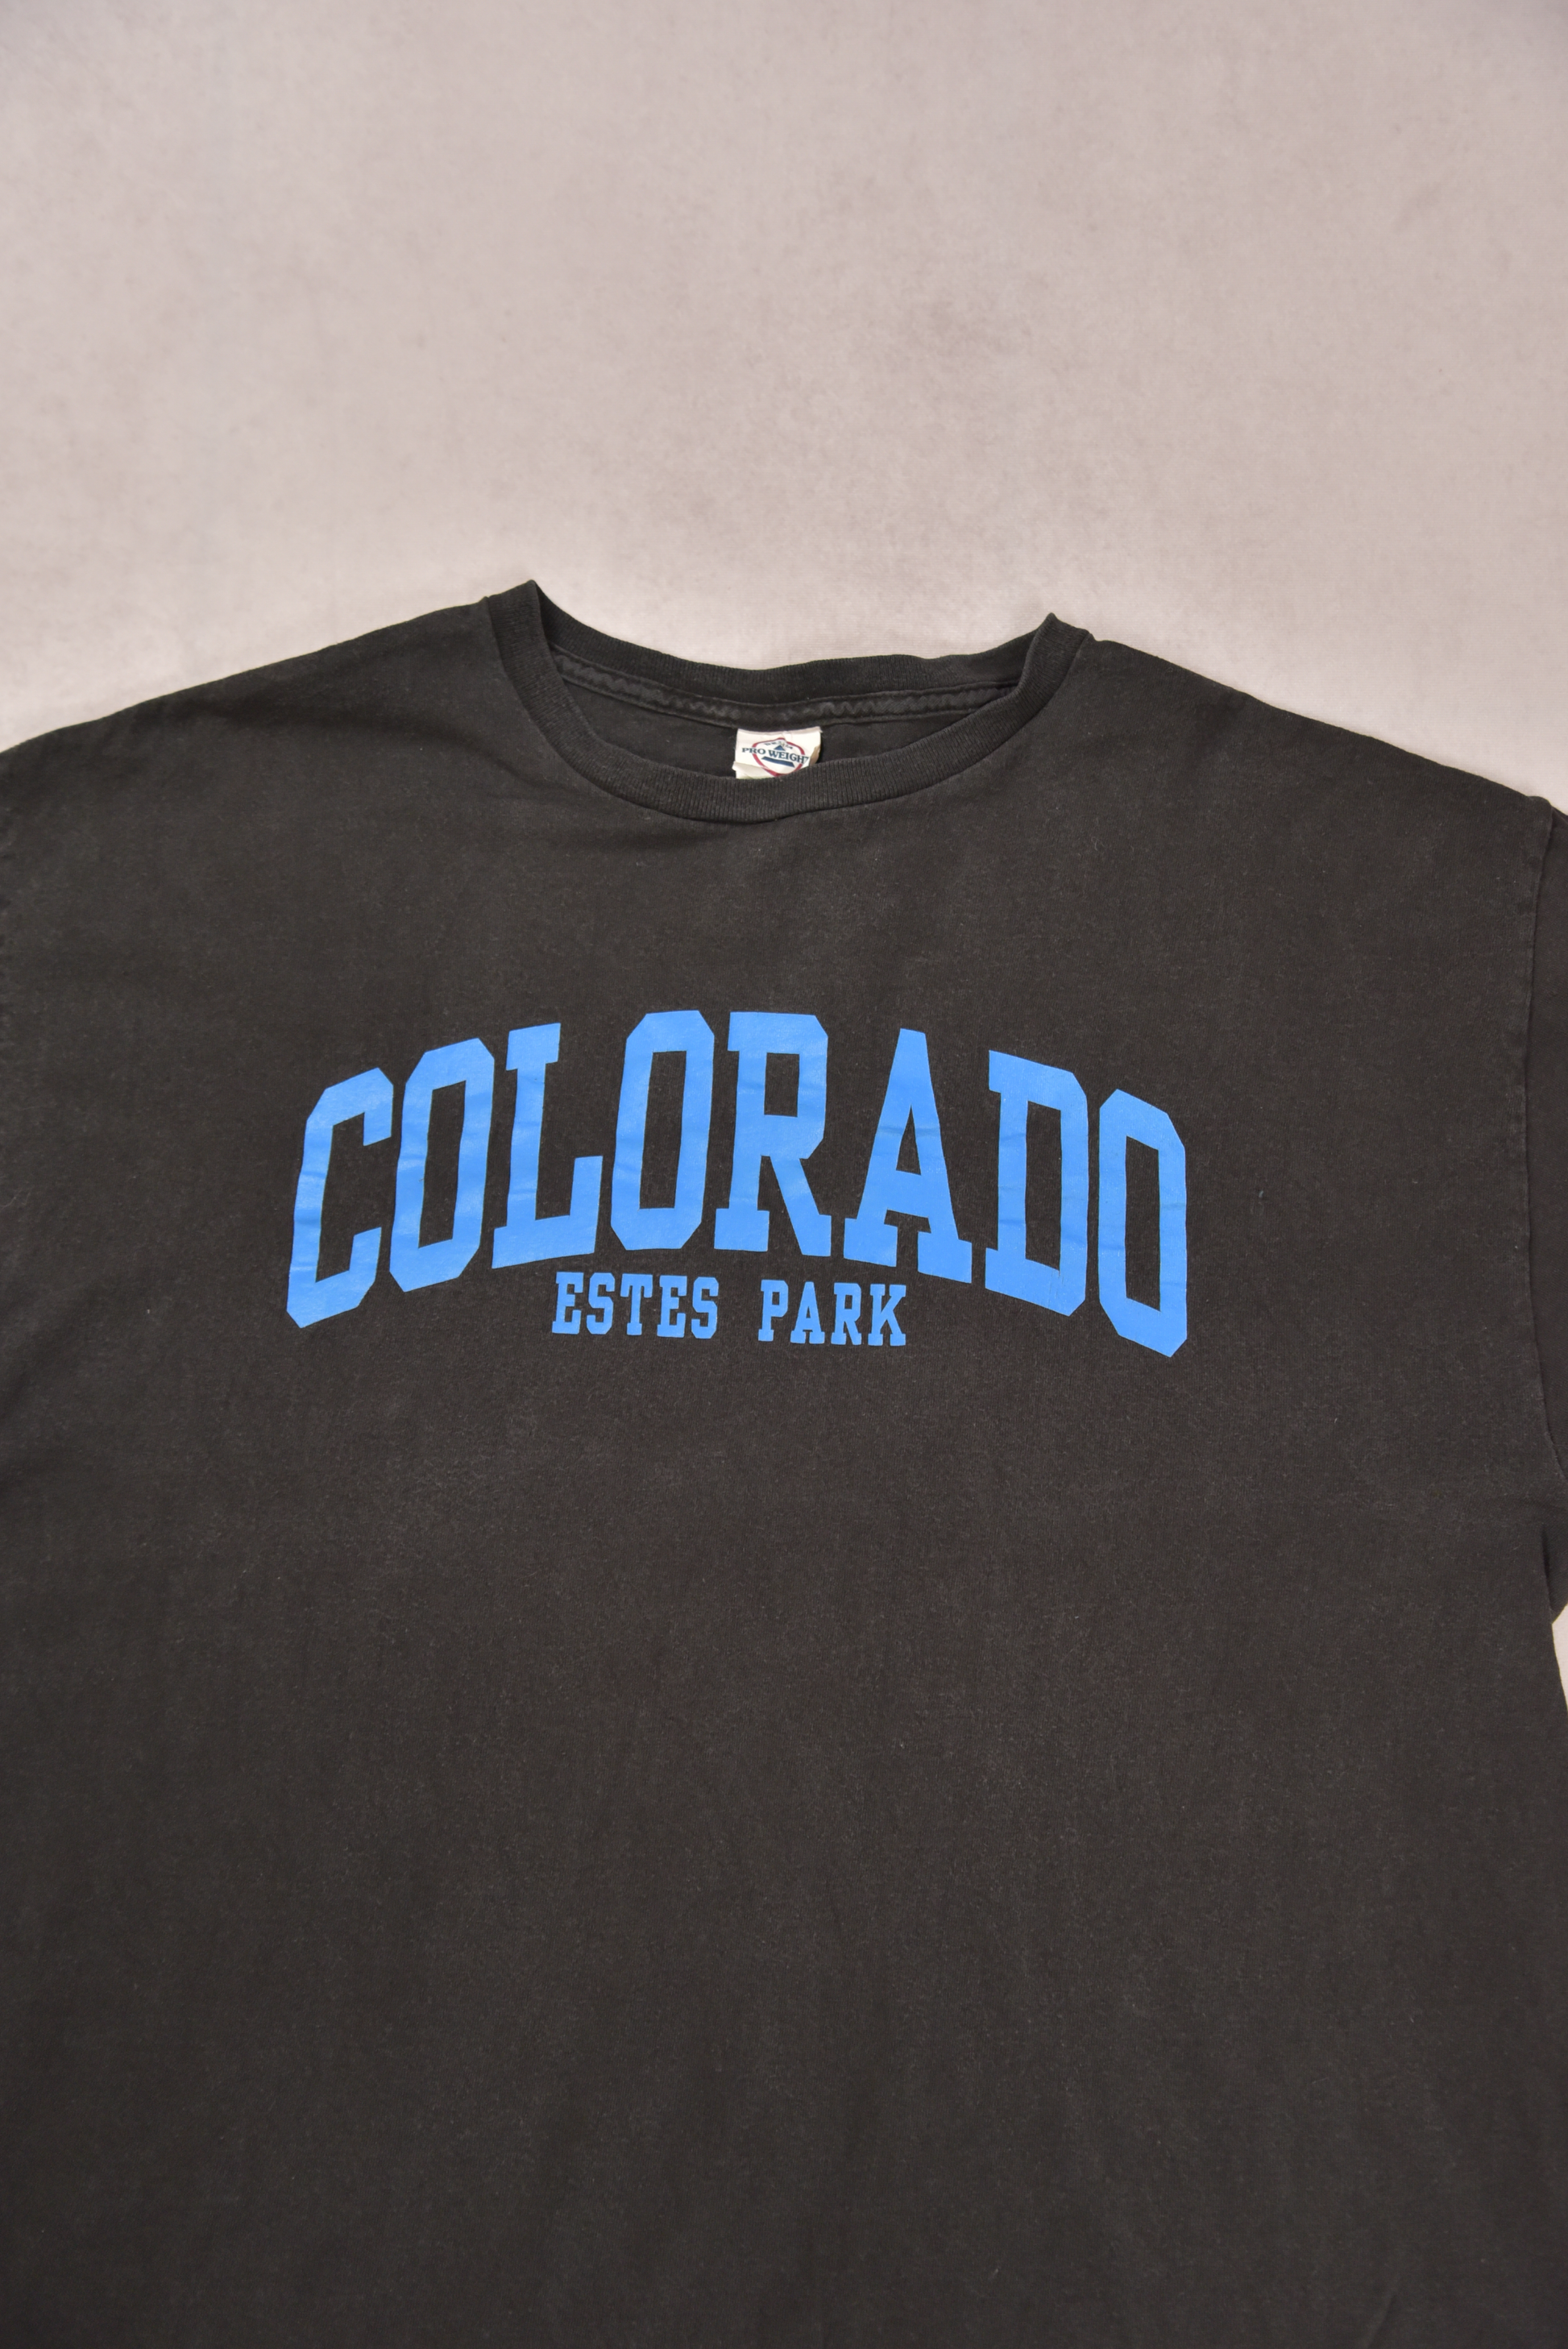 Colorado T-Shirt / L.